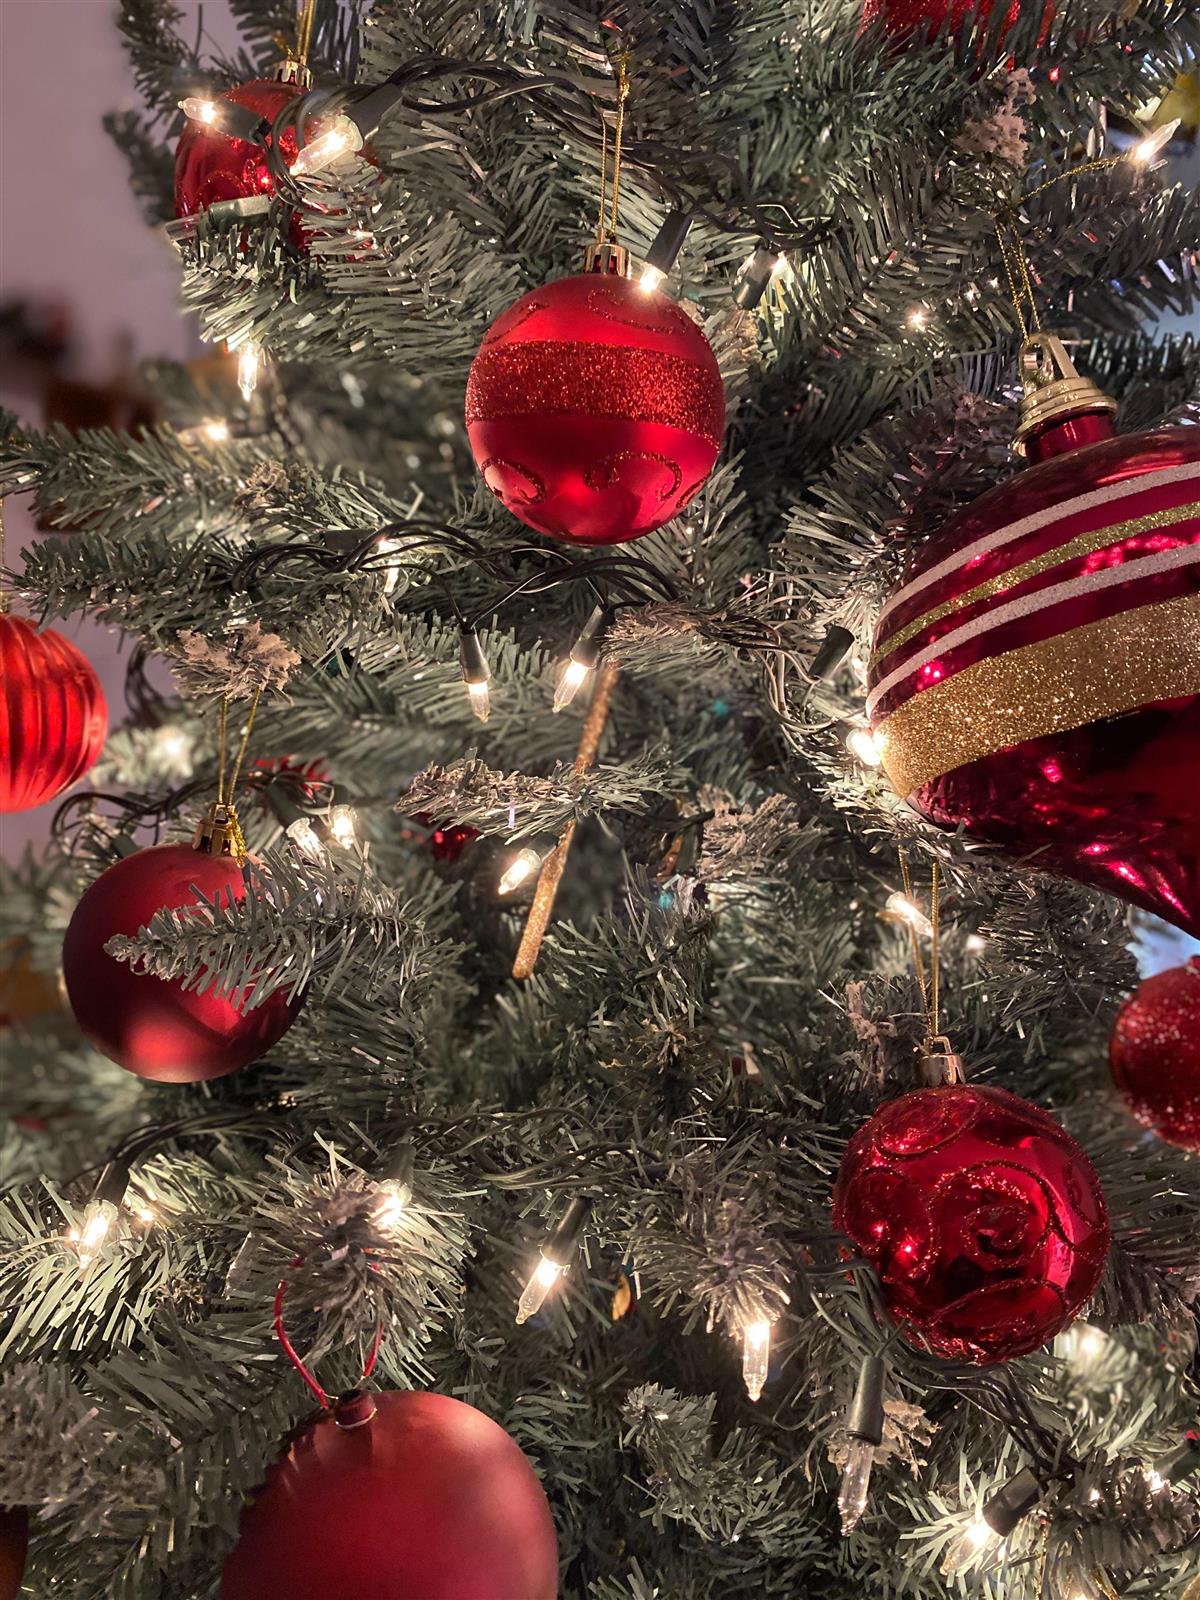 Et juletre med røde julekuler - Klikk for stort bilde